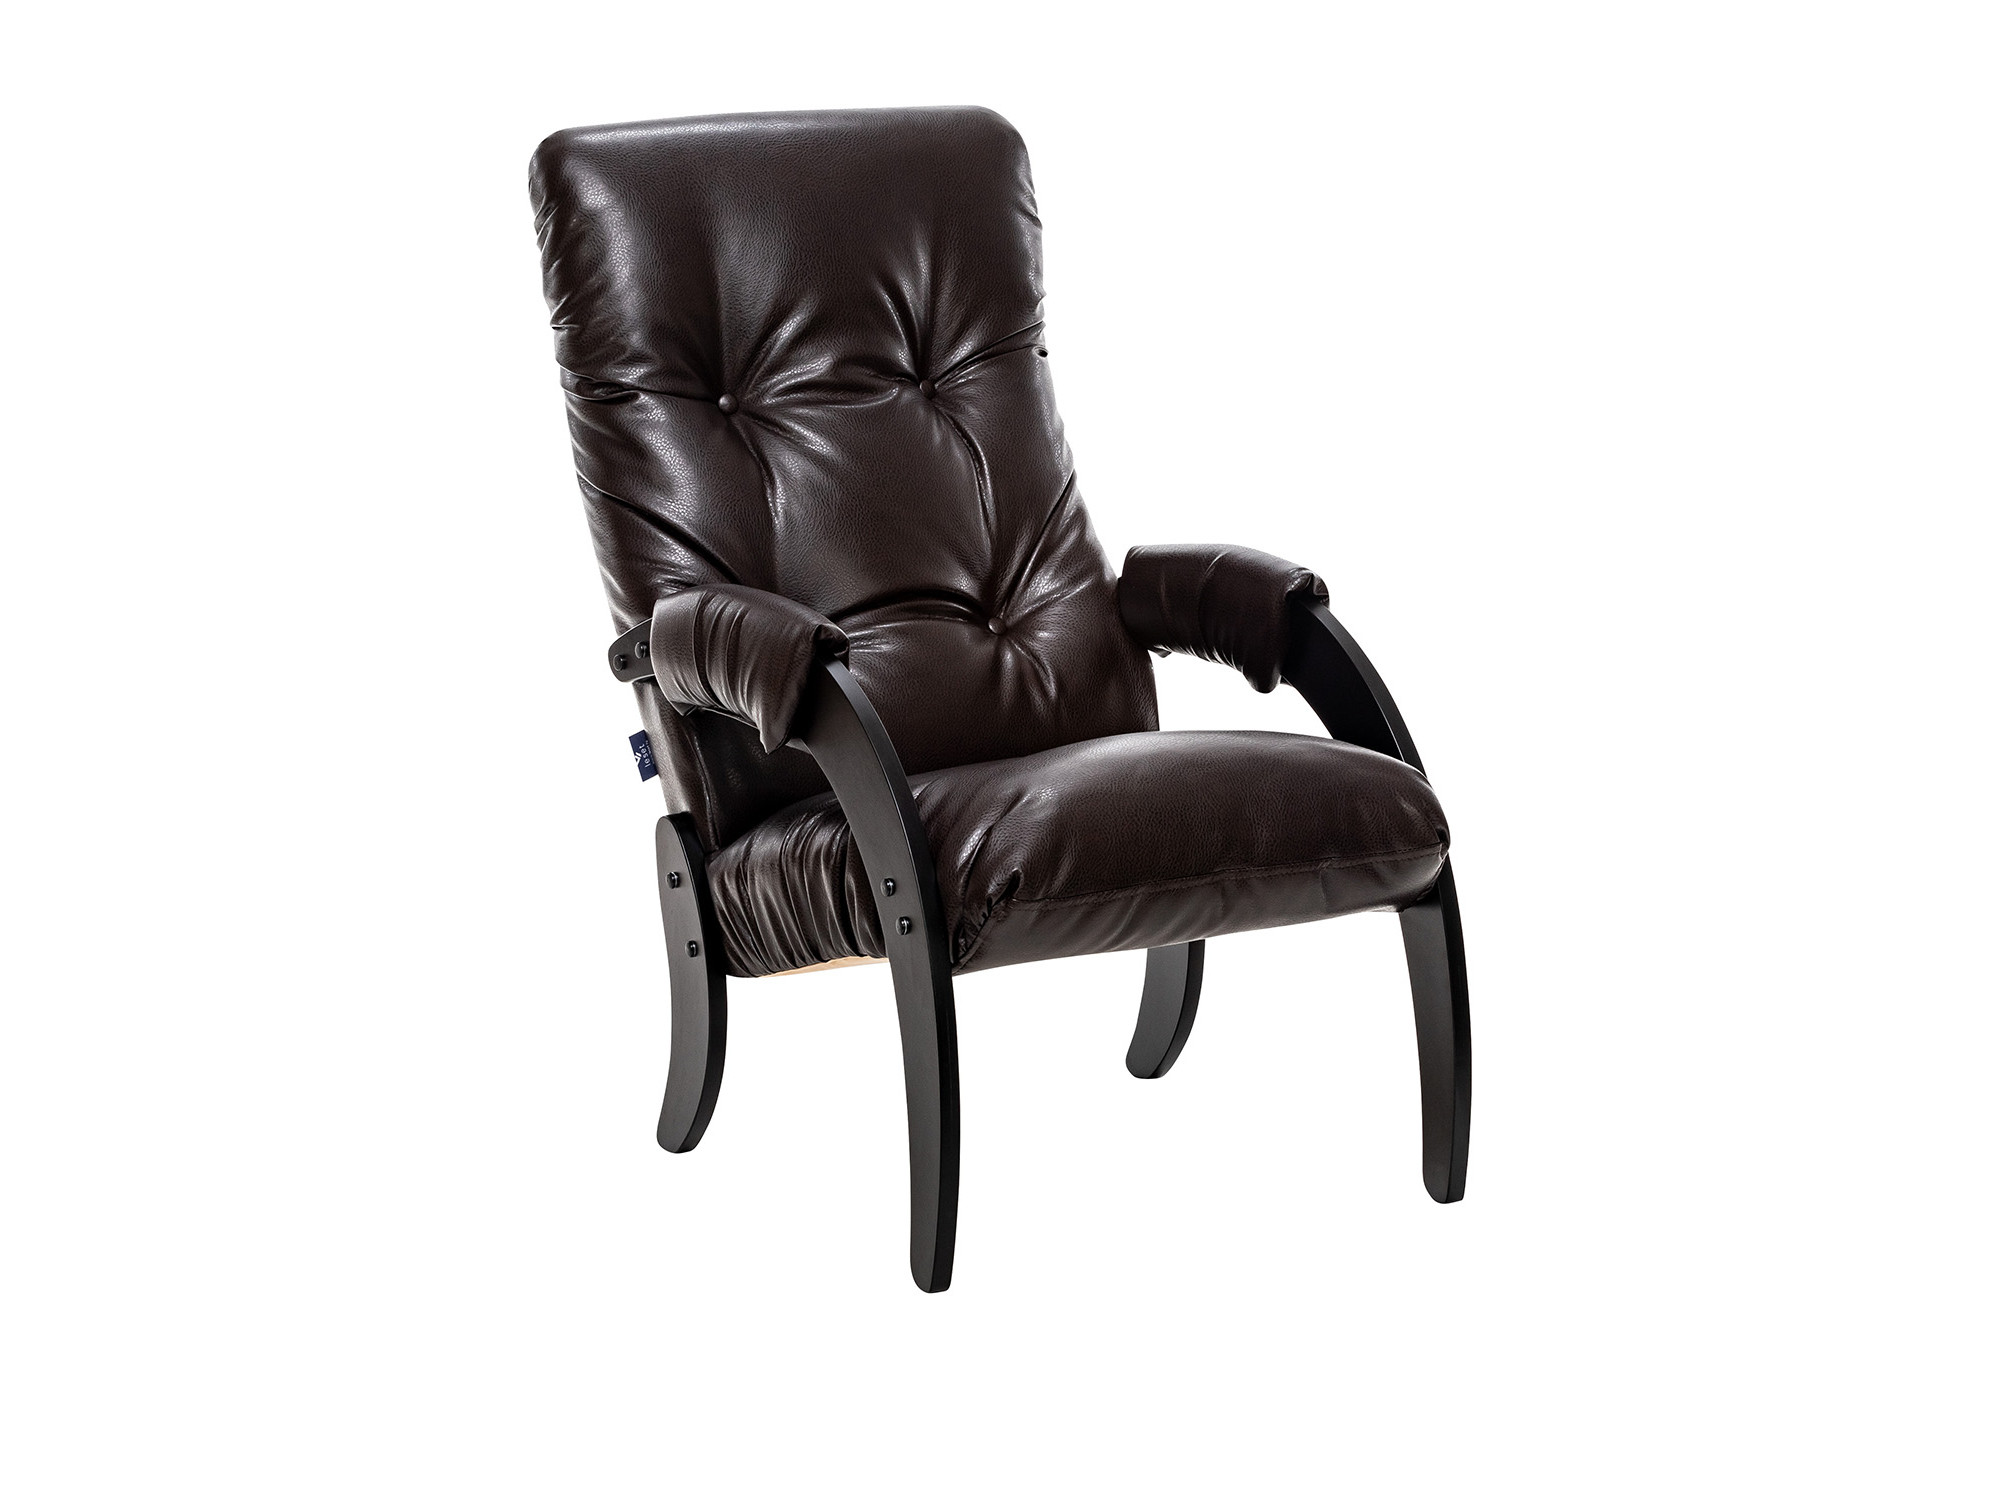 кресло глайдер персона люкс mebelvia madryt 9100 экокожа берёзовая фанера Кресло для отдыха Модель 61 Венге текстура, к/з Varana DK-BROWN MebelVia Varan